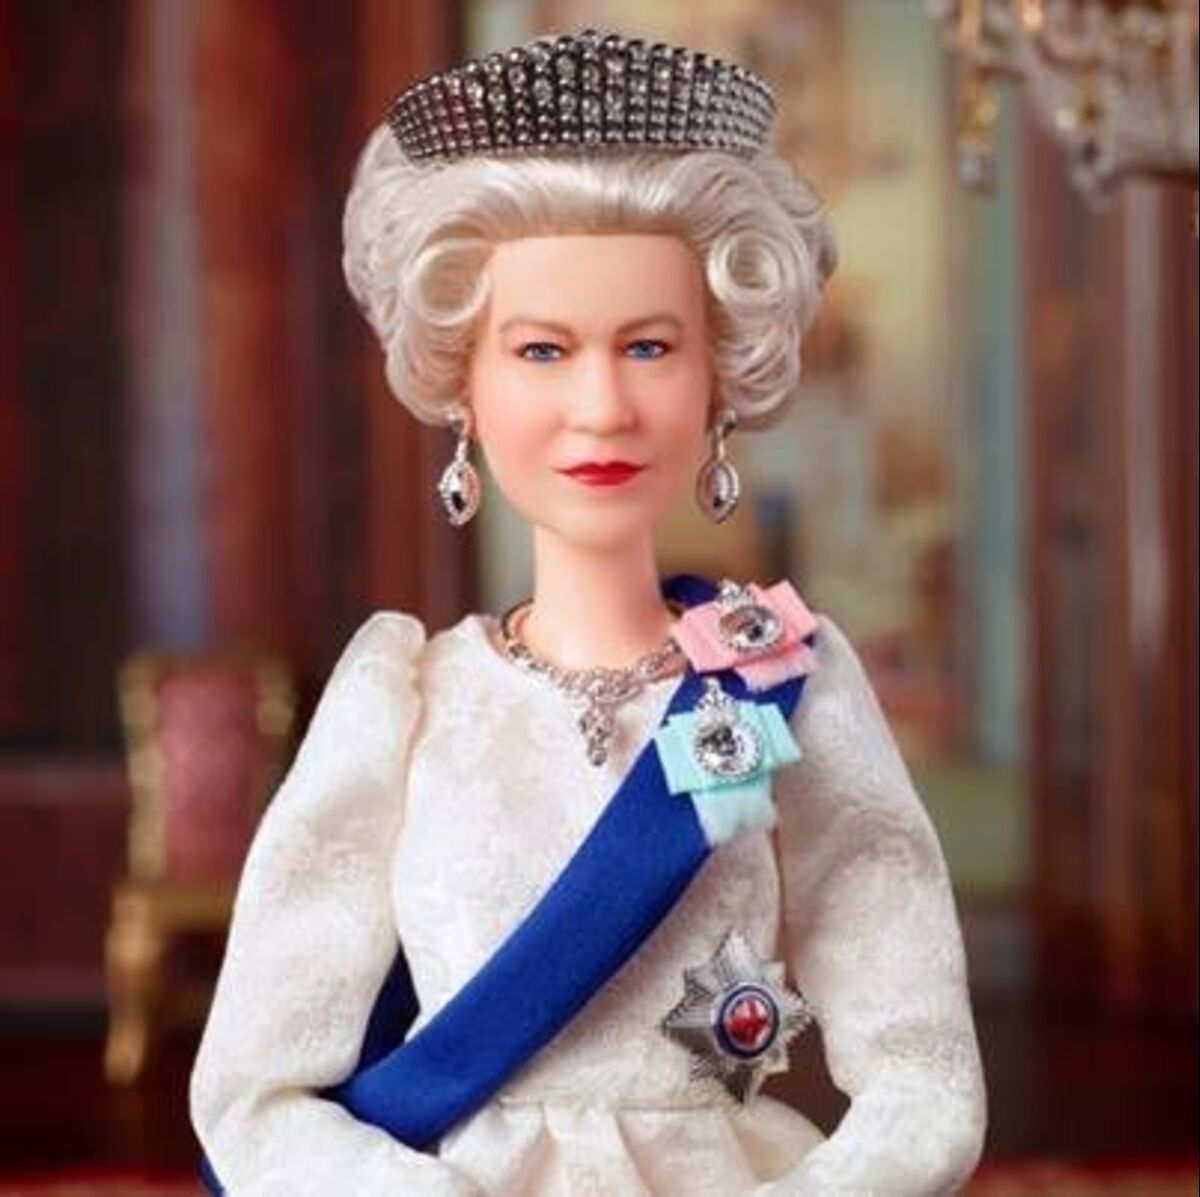 Ziek persoon knuffel waardigheid Where to Buy Barbie Queen Elizabeth Doll Marking Her Platinum Jubilee -  Bloomberg